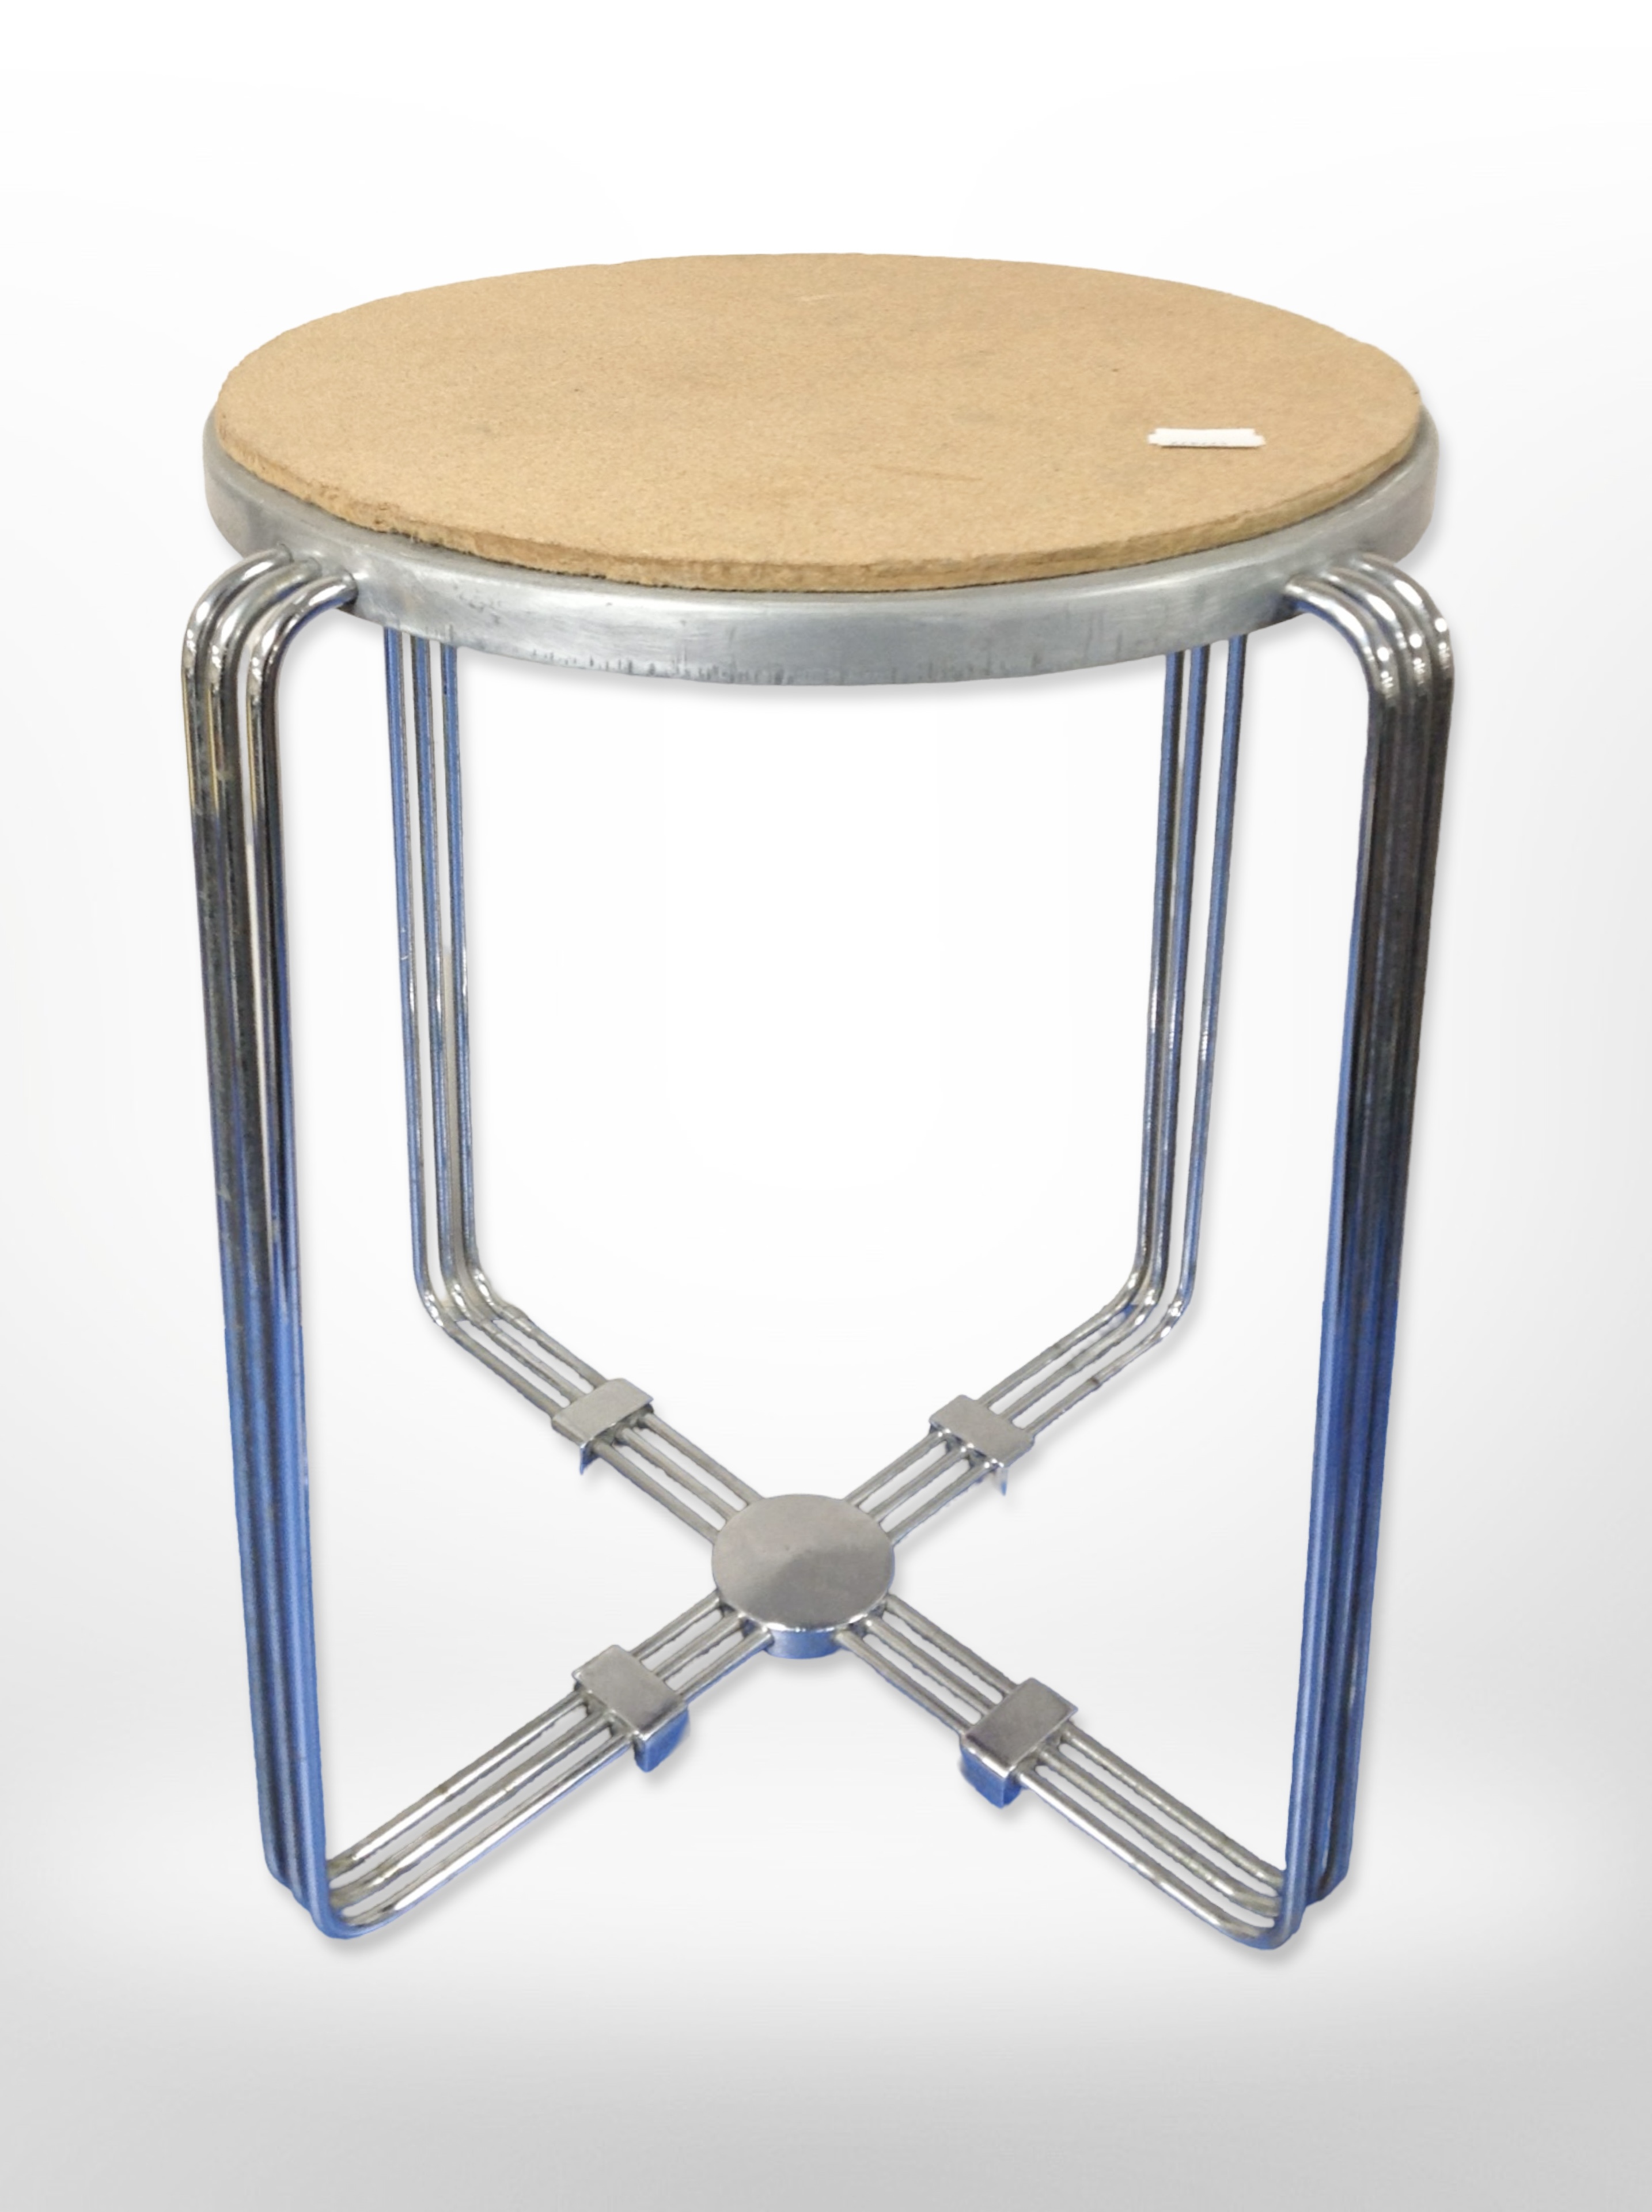 A chrome-framed circular stool, height 41cm.